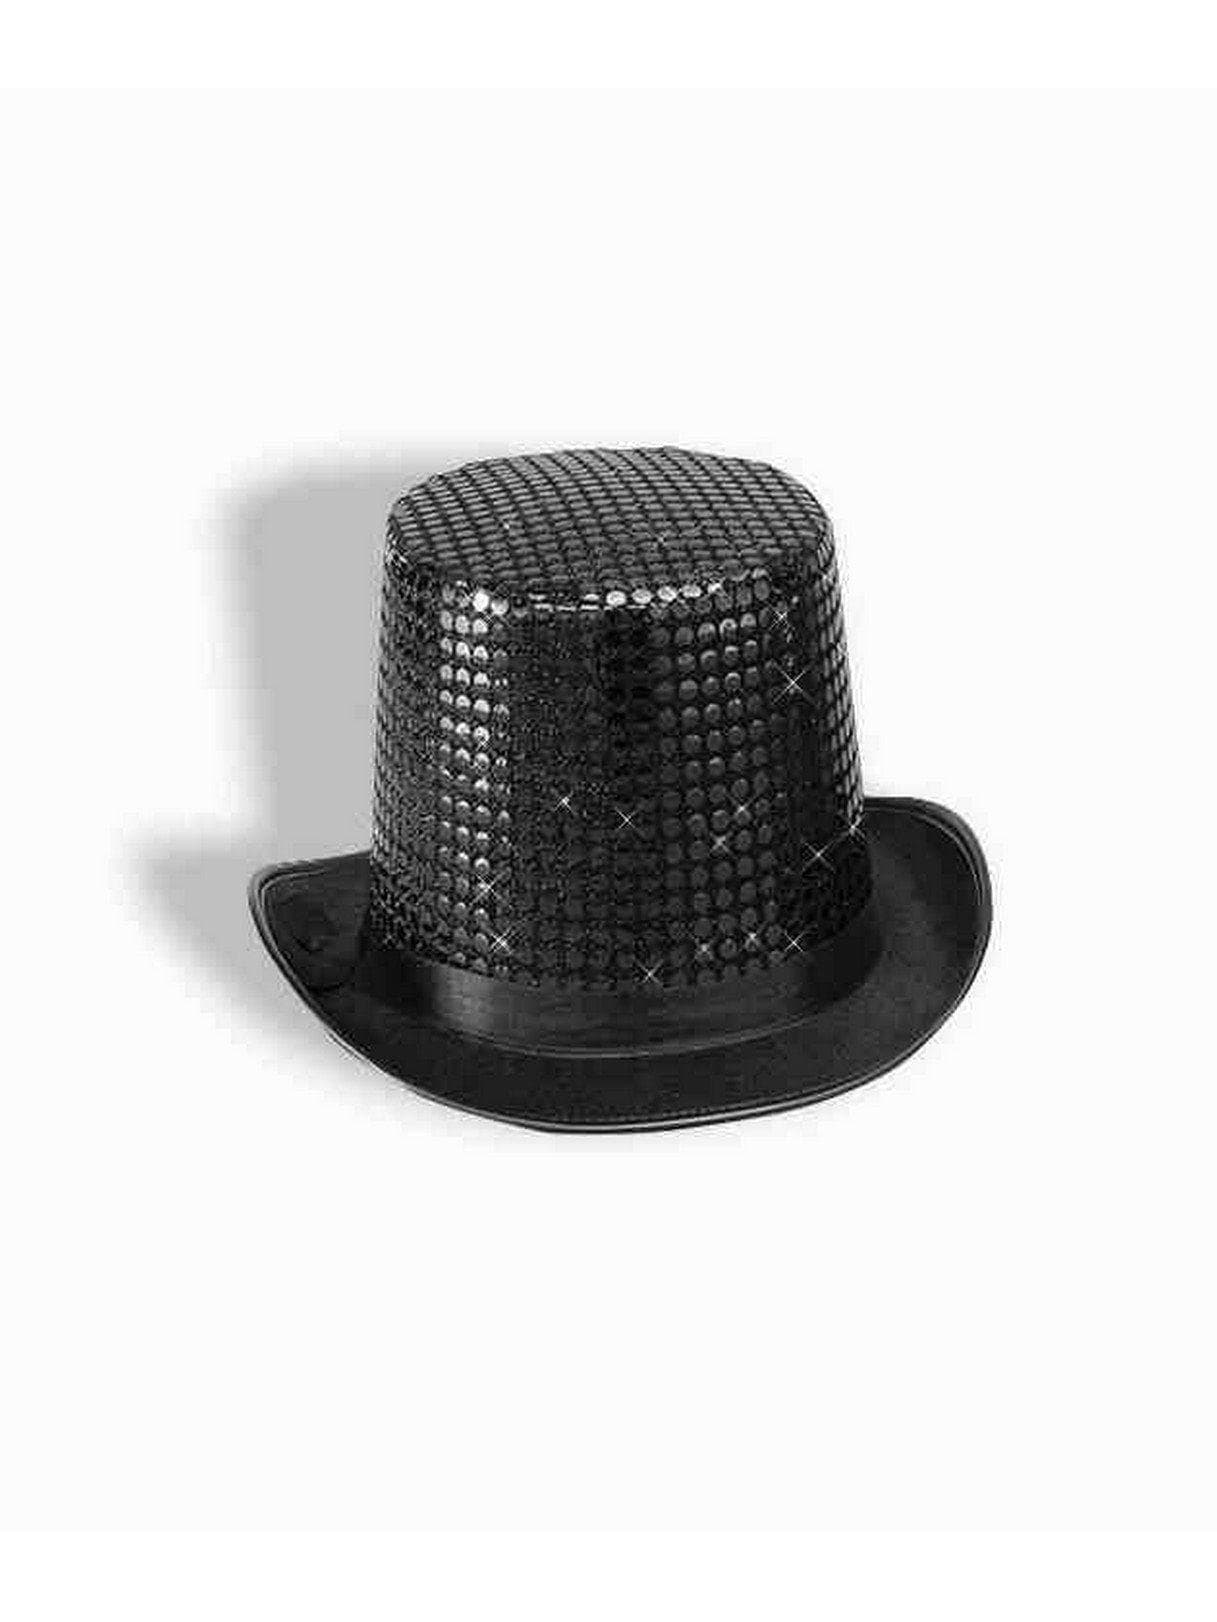 Adult Black Sequin Top Hat - costumes.com